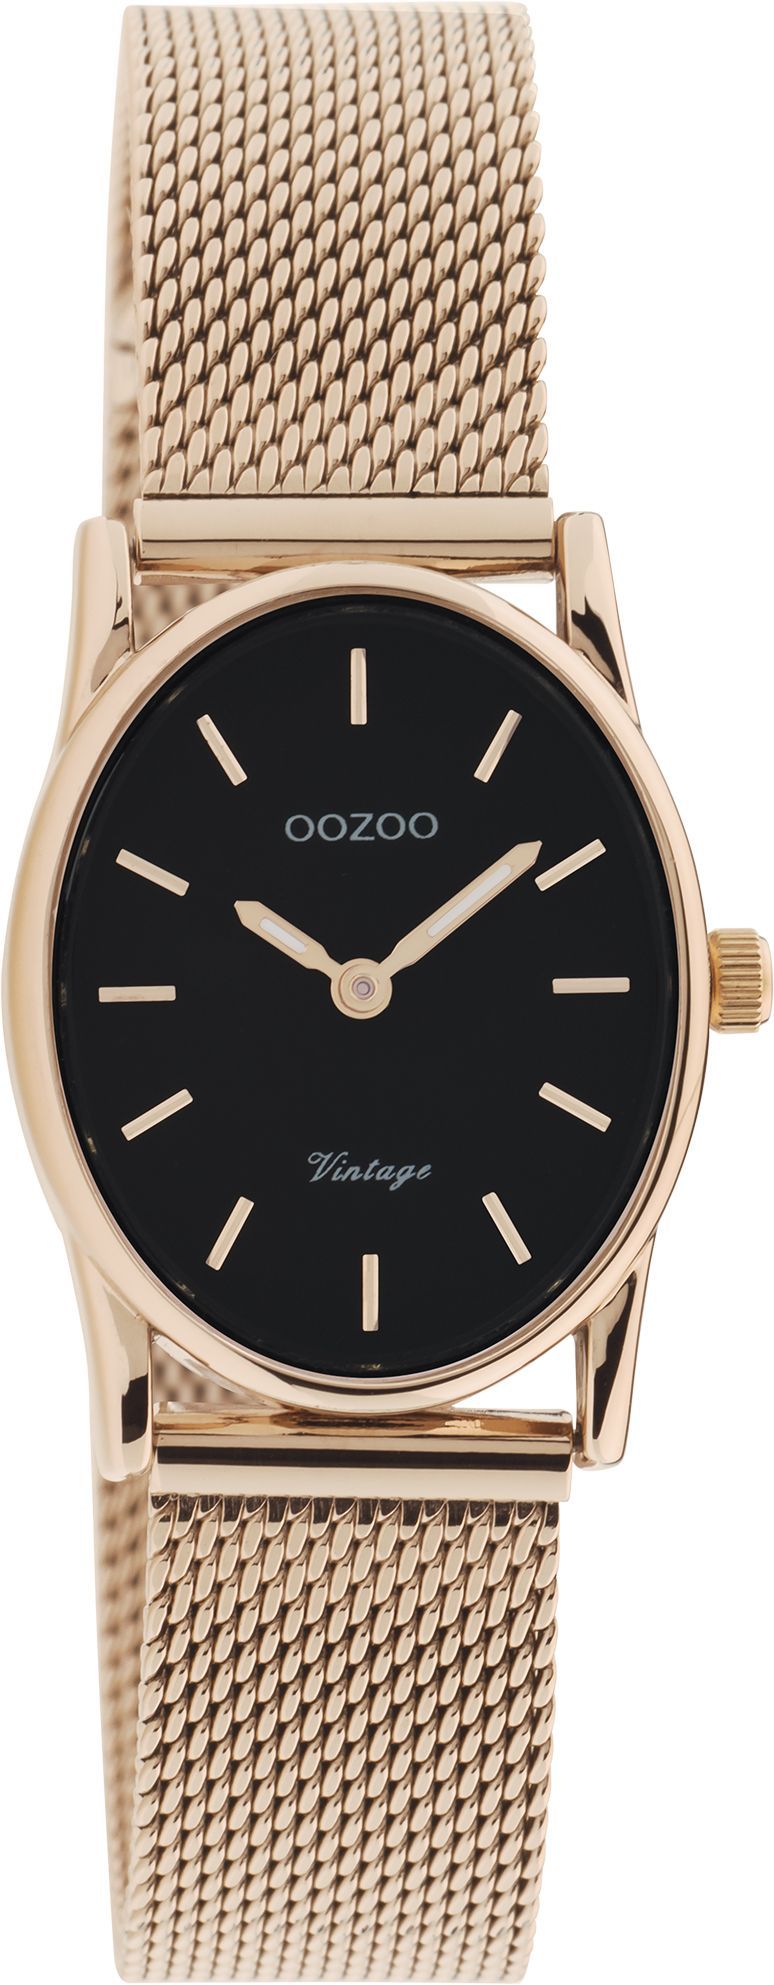 OOZOO Vintage C20260 σε ασημί χρώμα